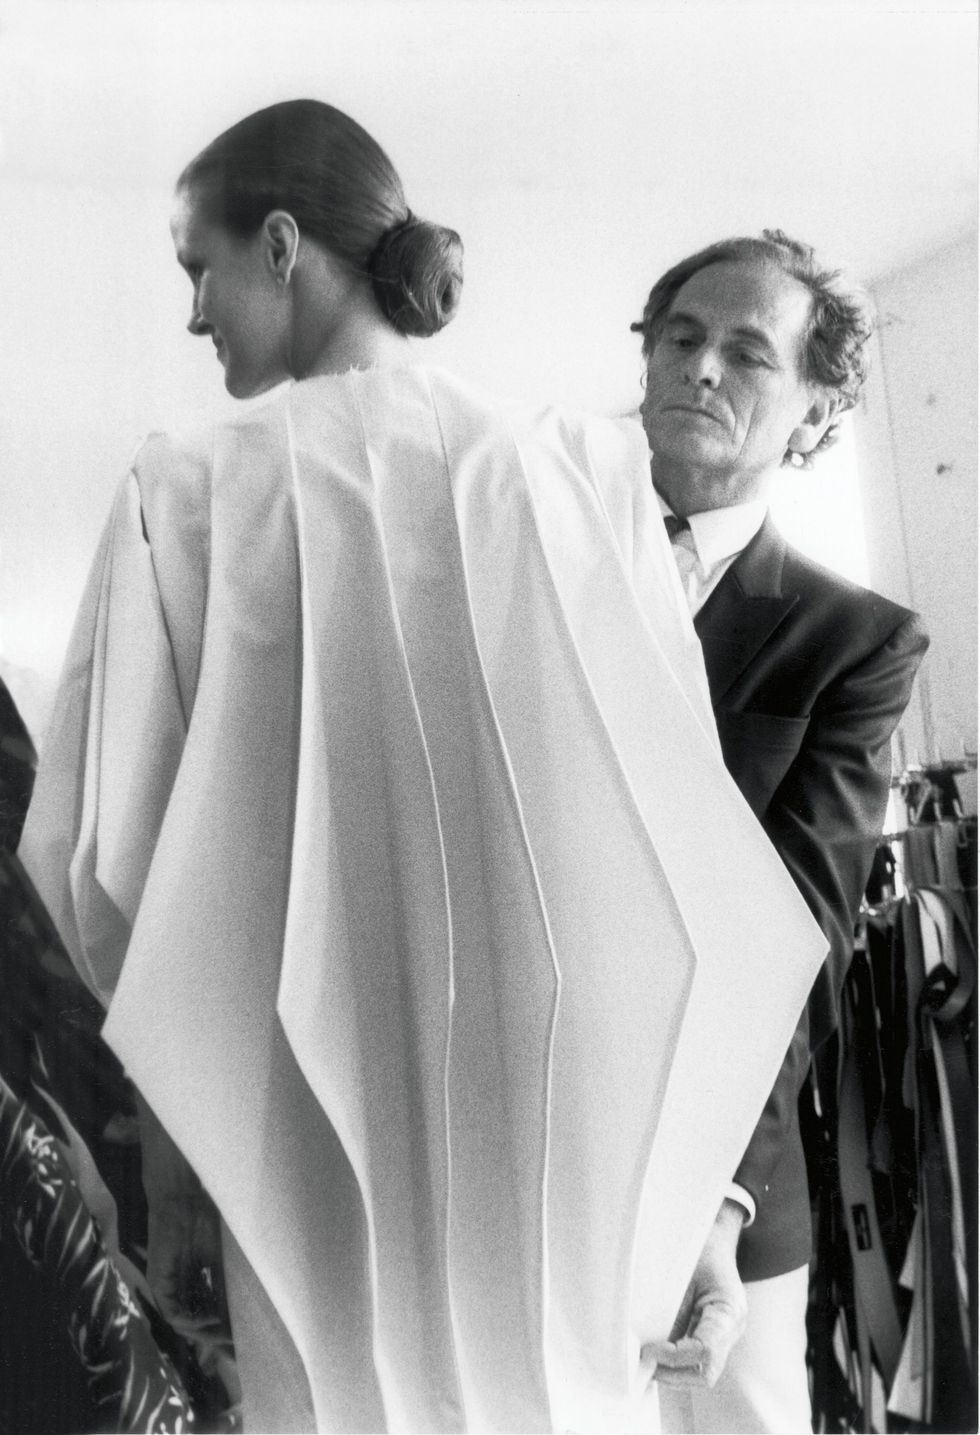 Pierre Cardin, Computer coat, future fashion